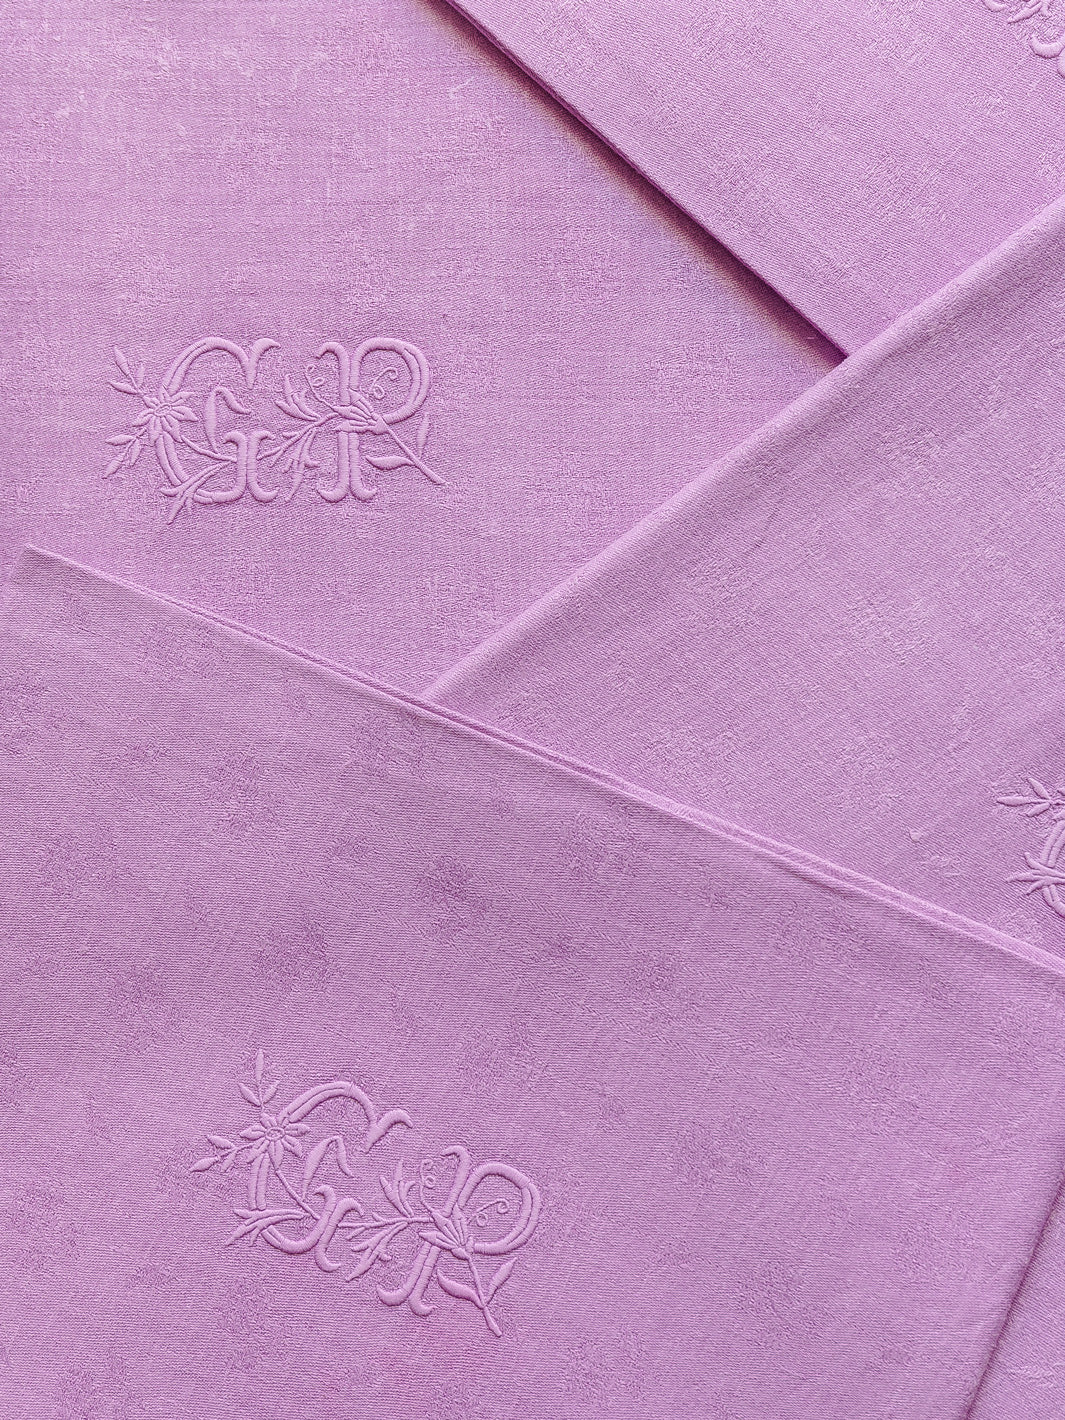 Set of 4 Purple Damask "GR" napkins